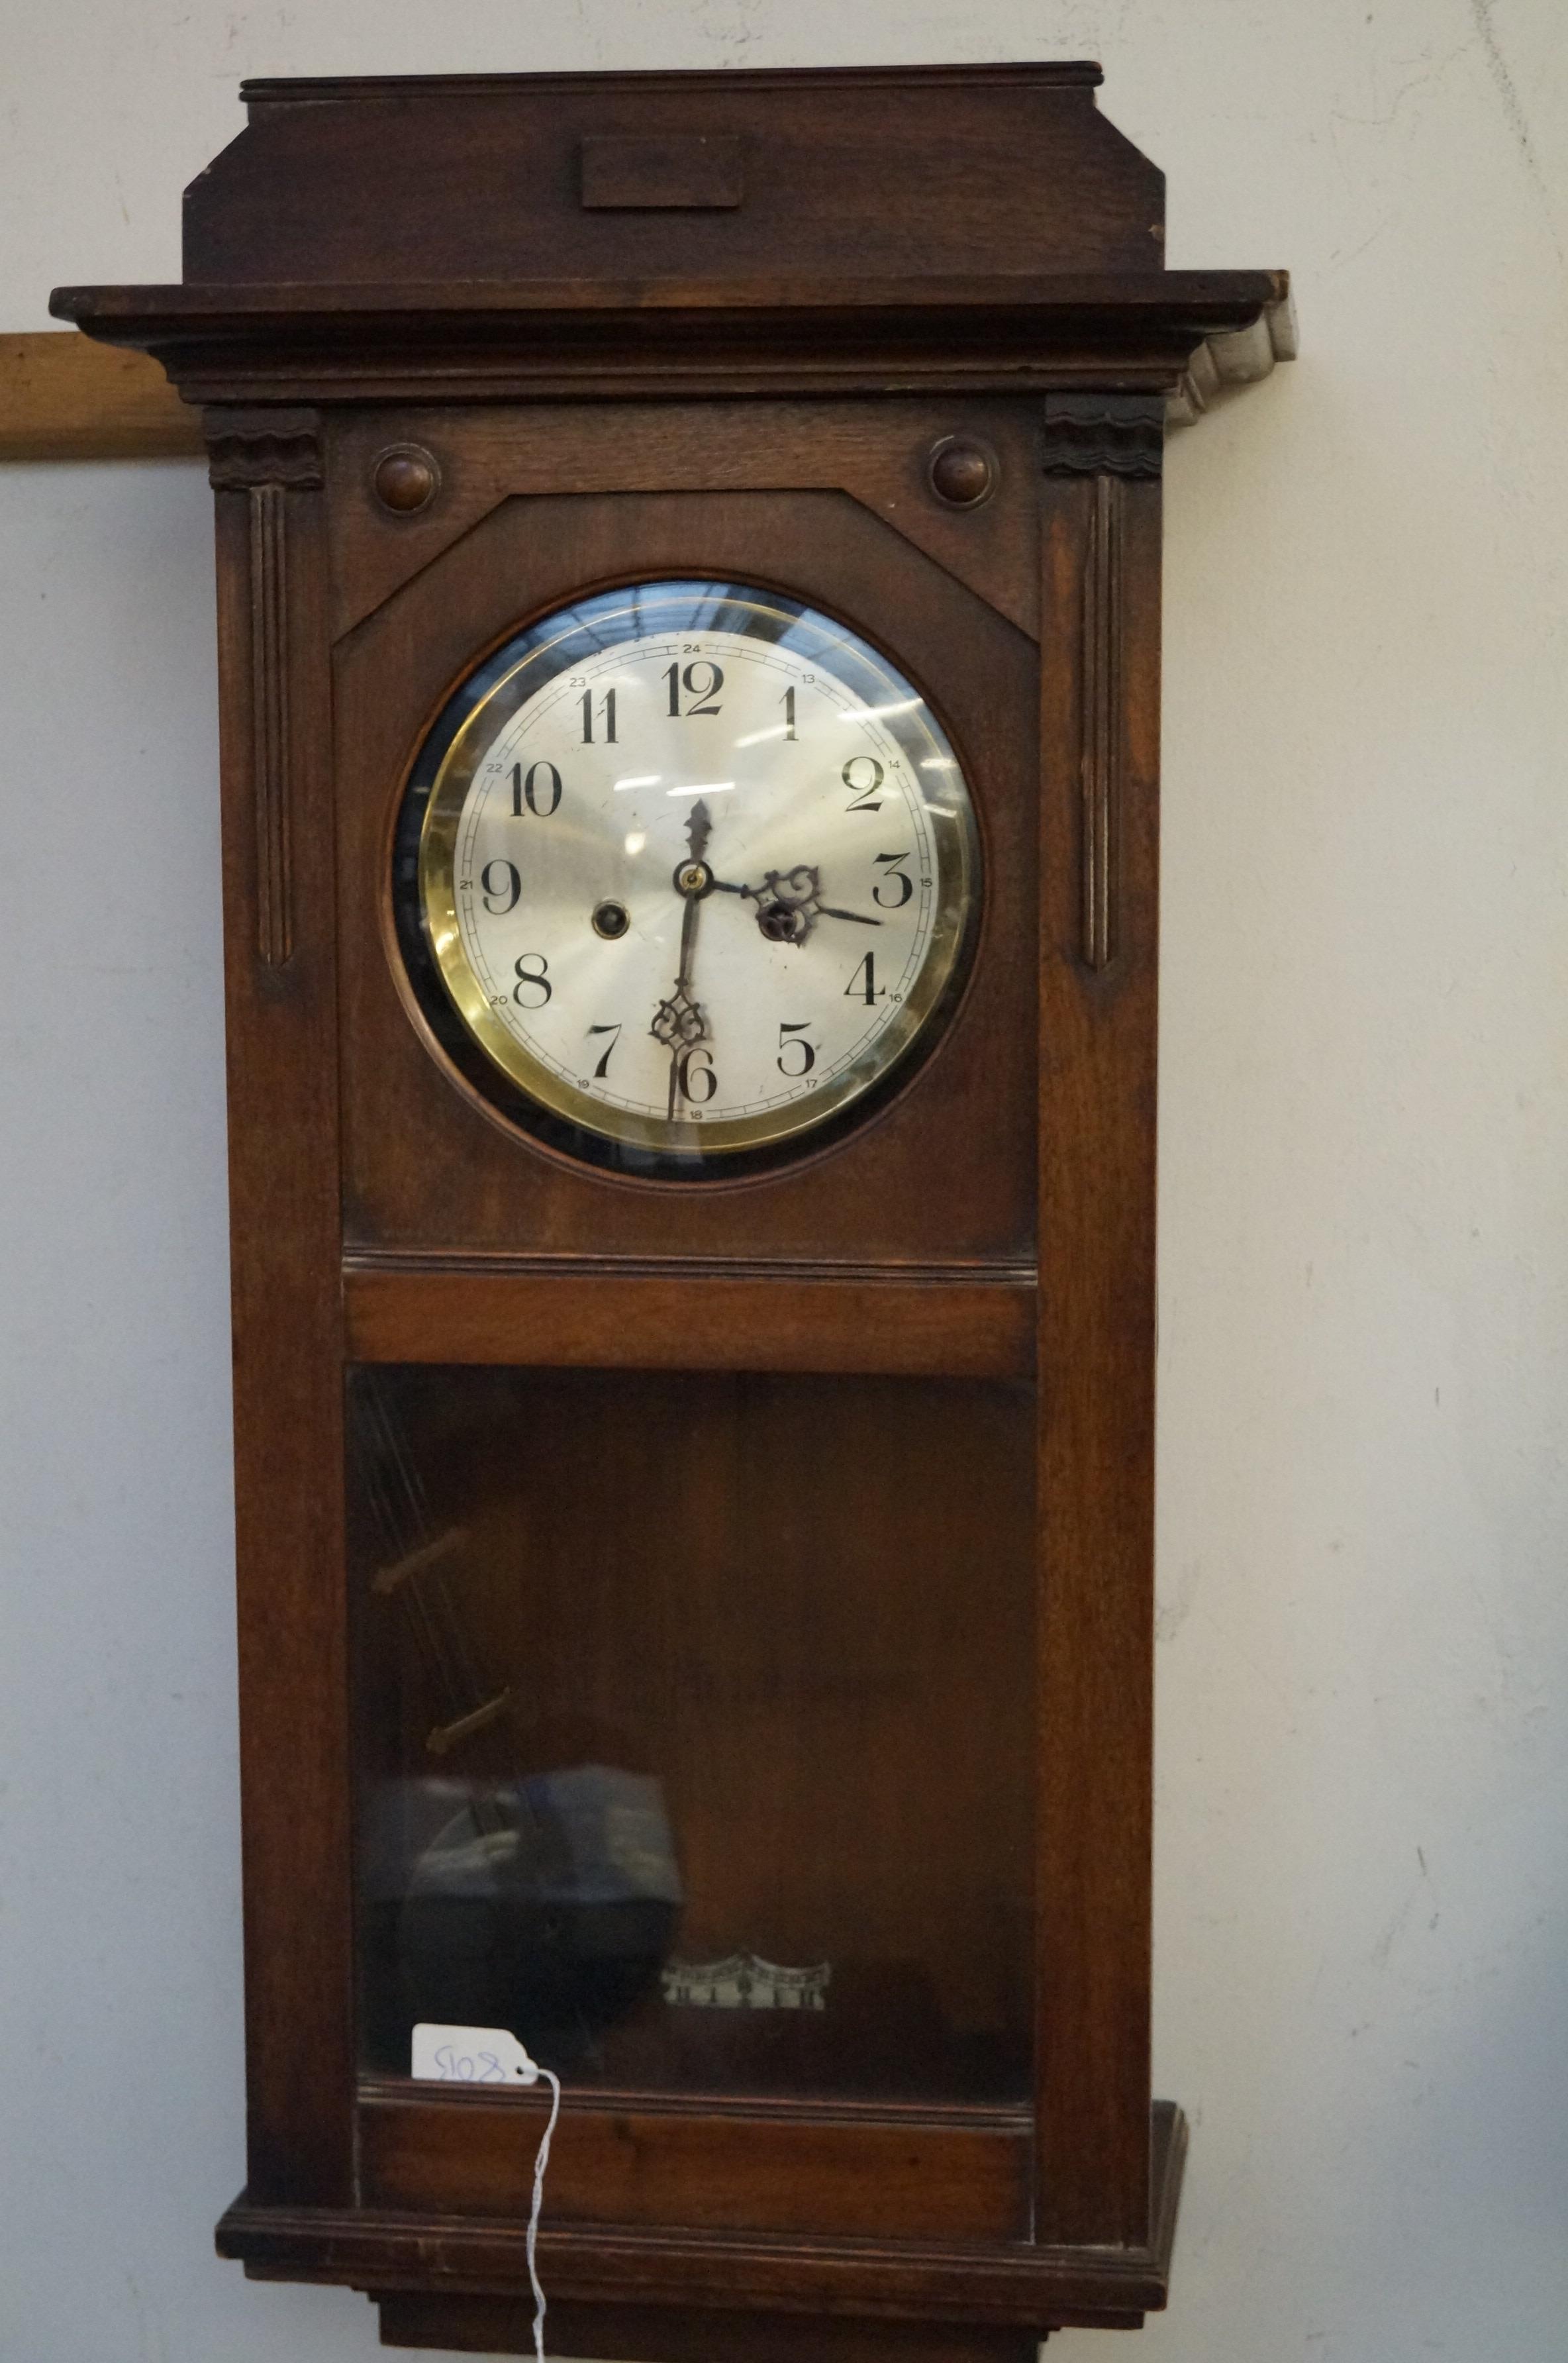 Early 20th century wall clock